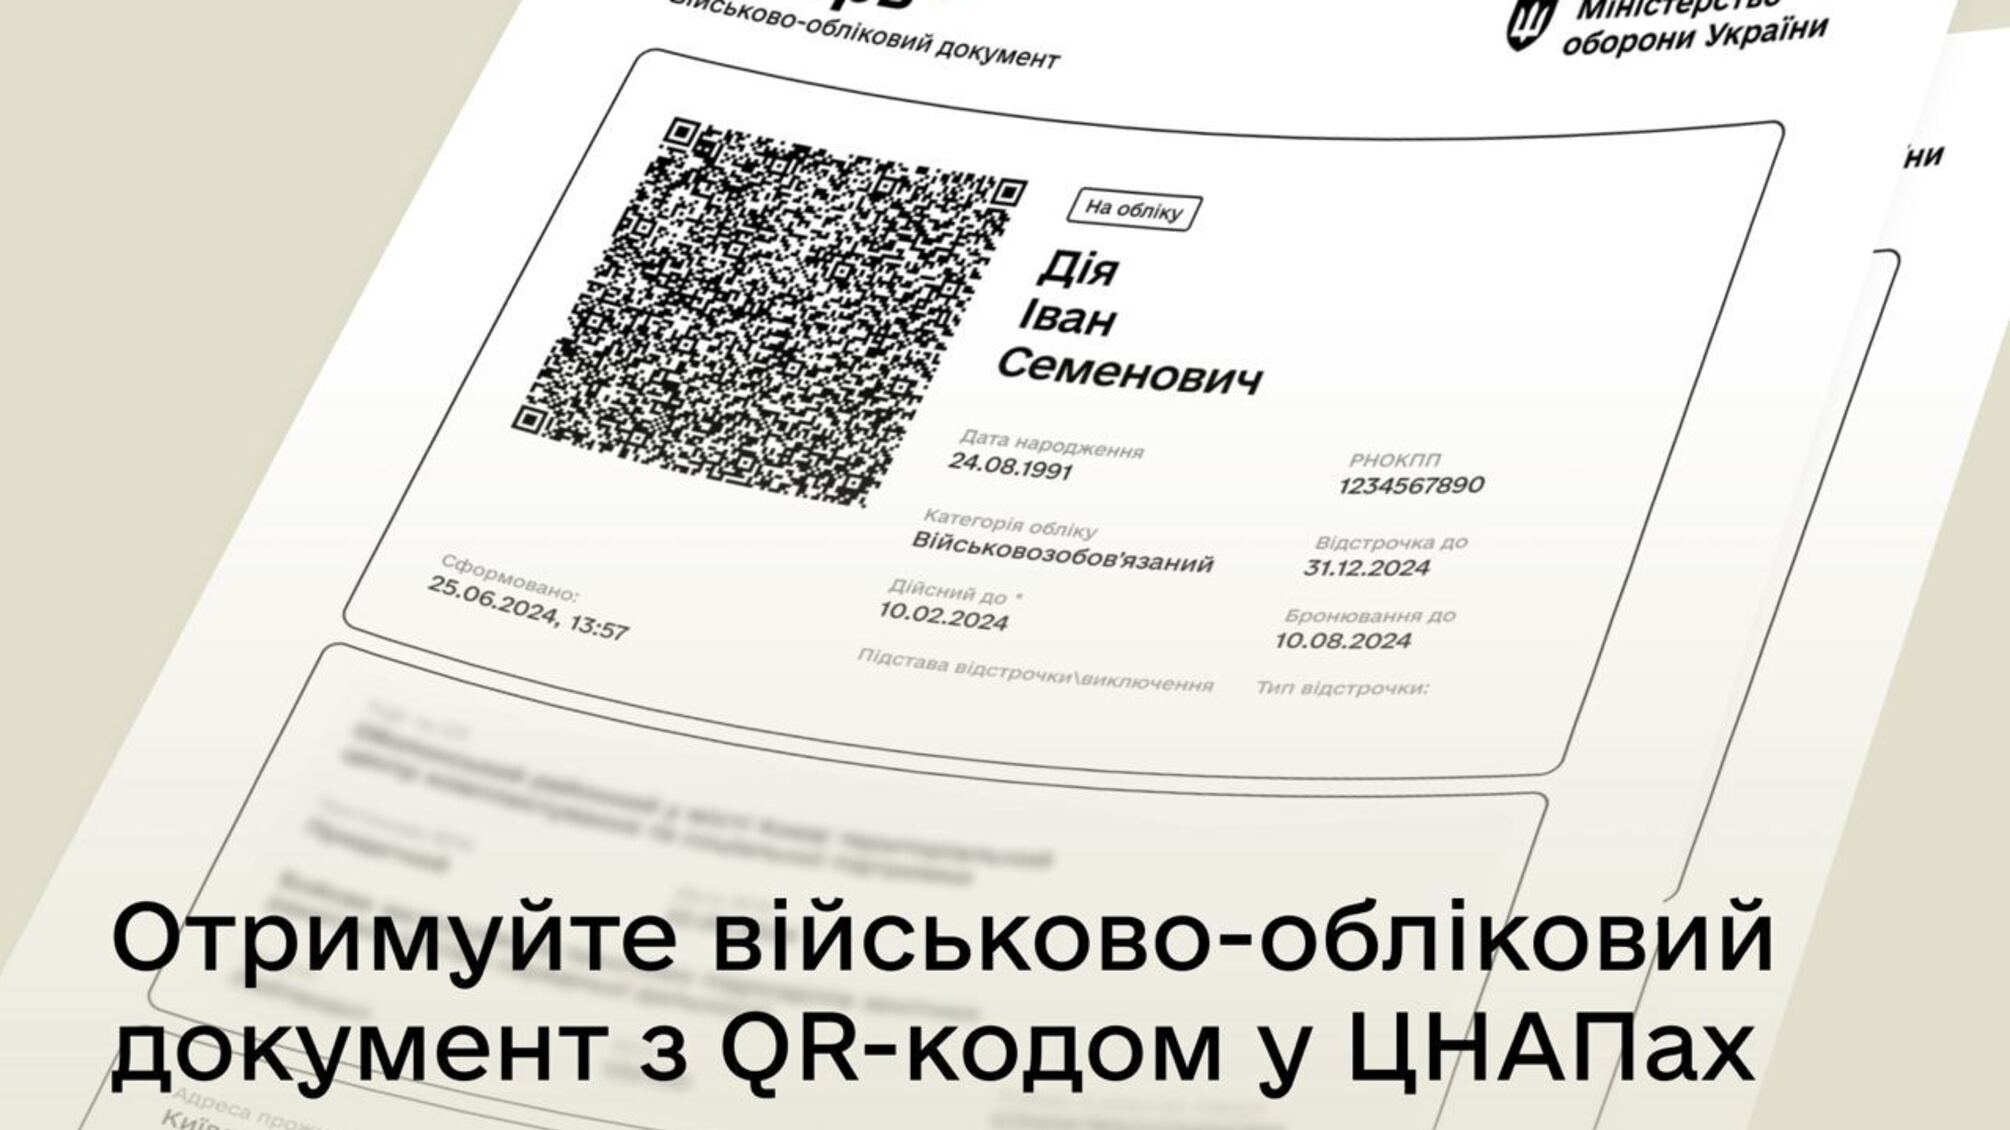 Військові документи з QR-кодом тепер доступні в ЦНАПі